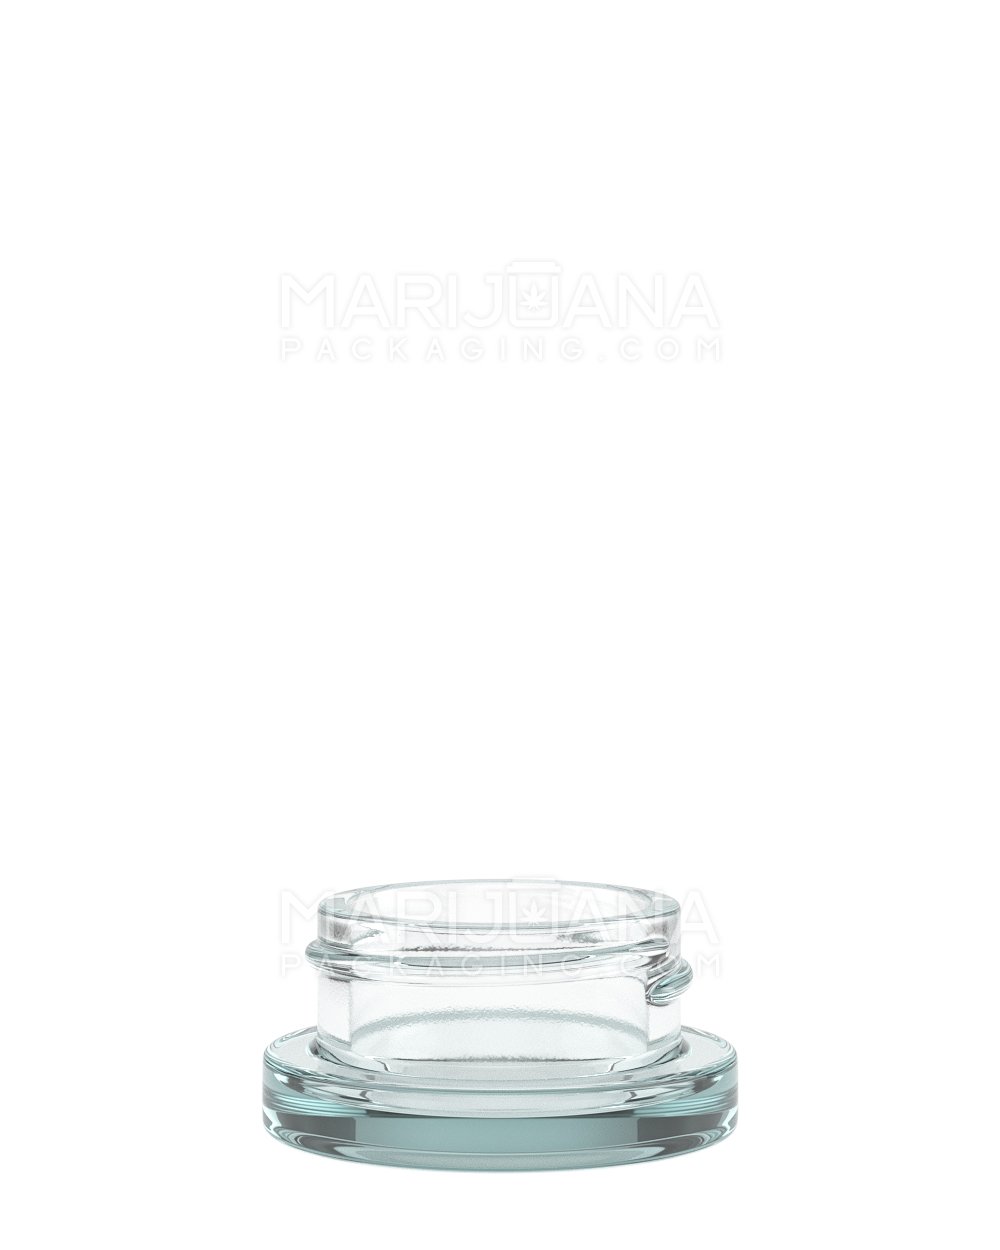 Bulk Empty Premium Glass Jars for Dabs - 5ml - Ghost Vapors